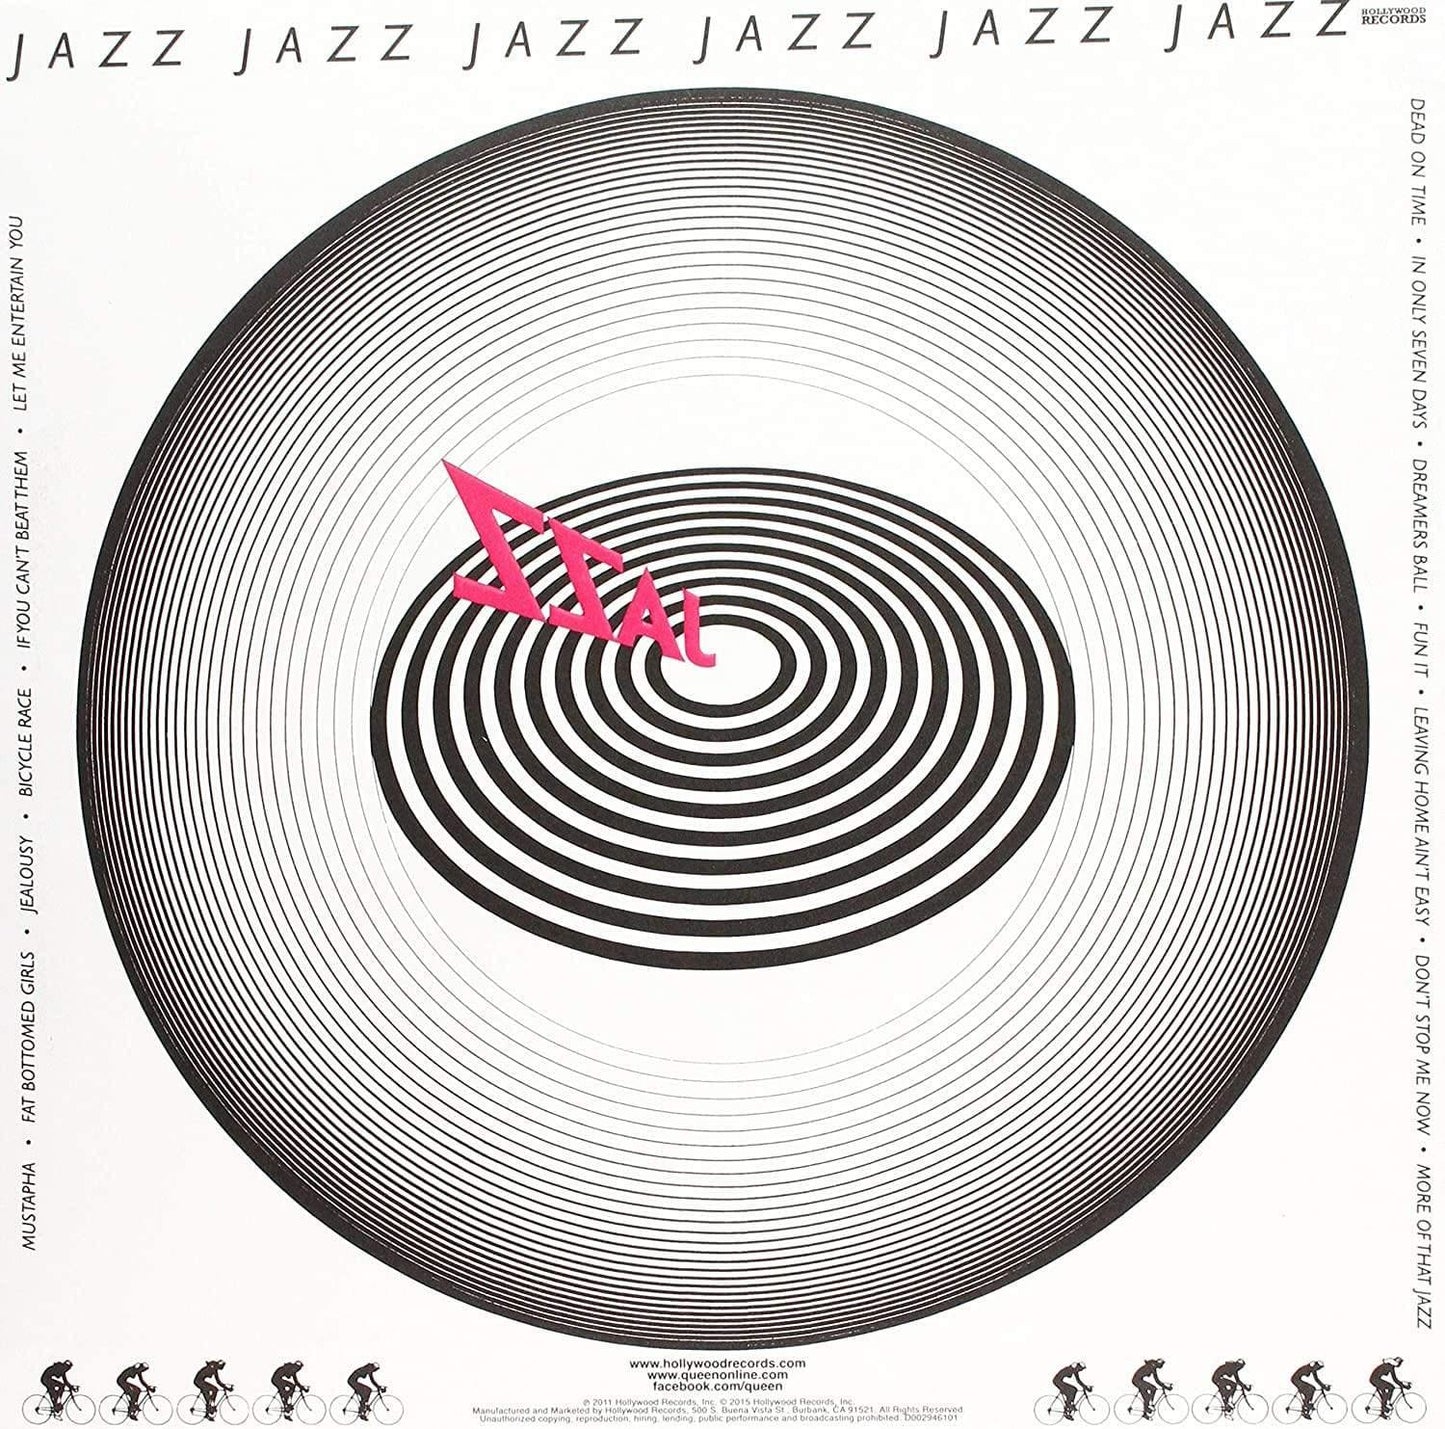 Queen - Jazz (Remastered, Embossed Gatefold Jacket, 180 Gram) (LP) - Joco Records